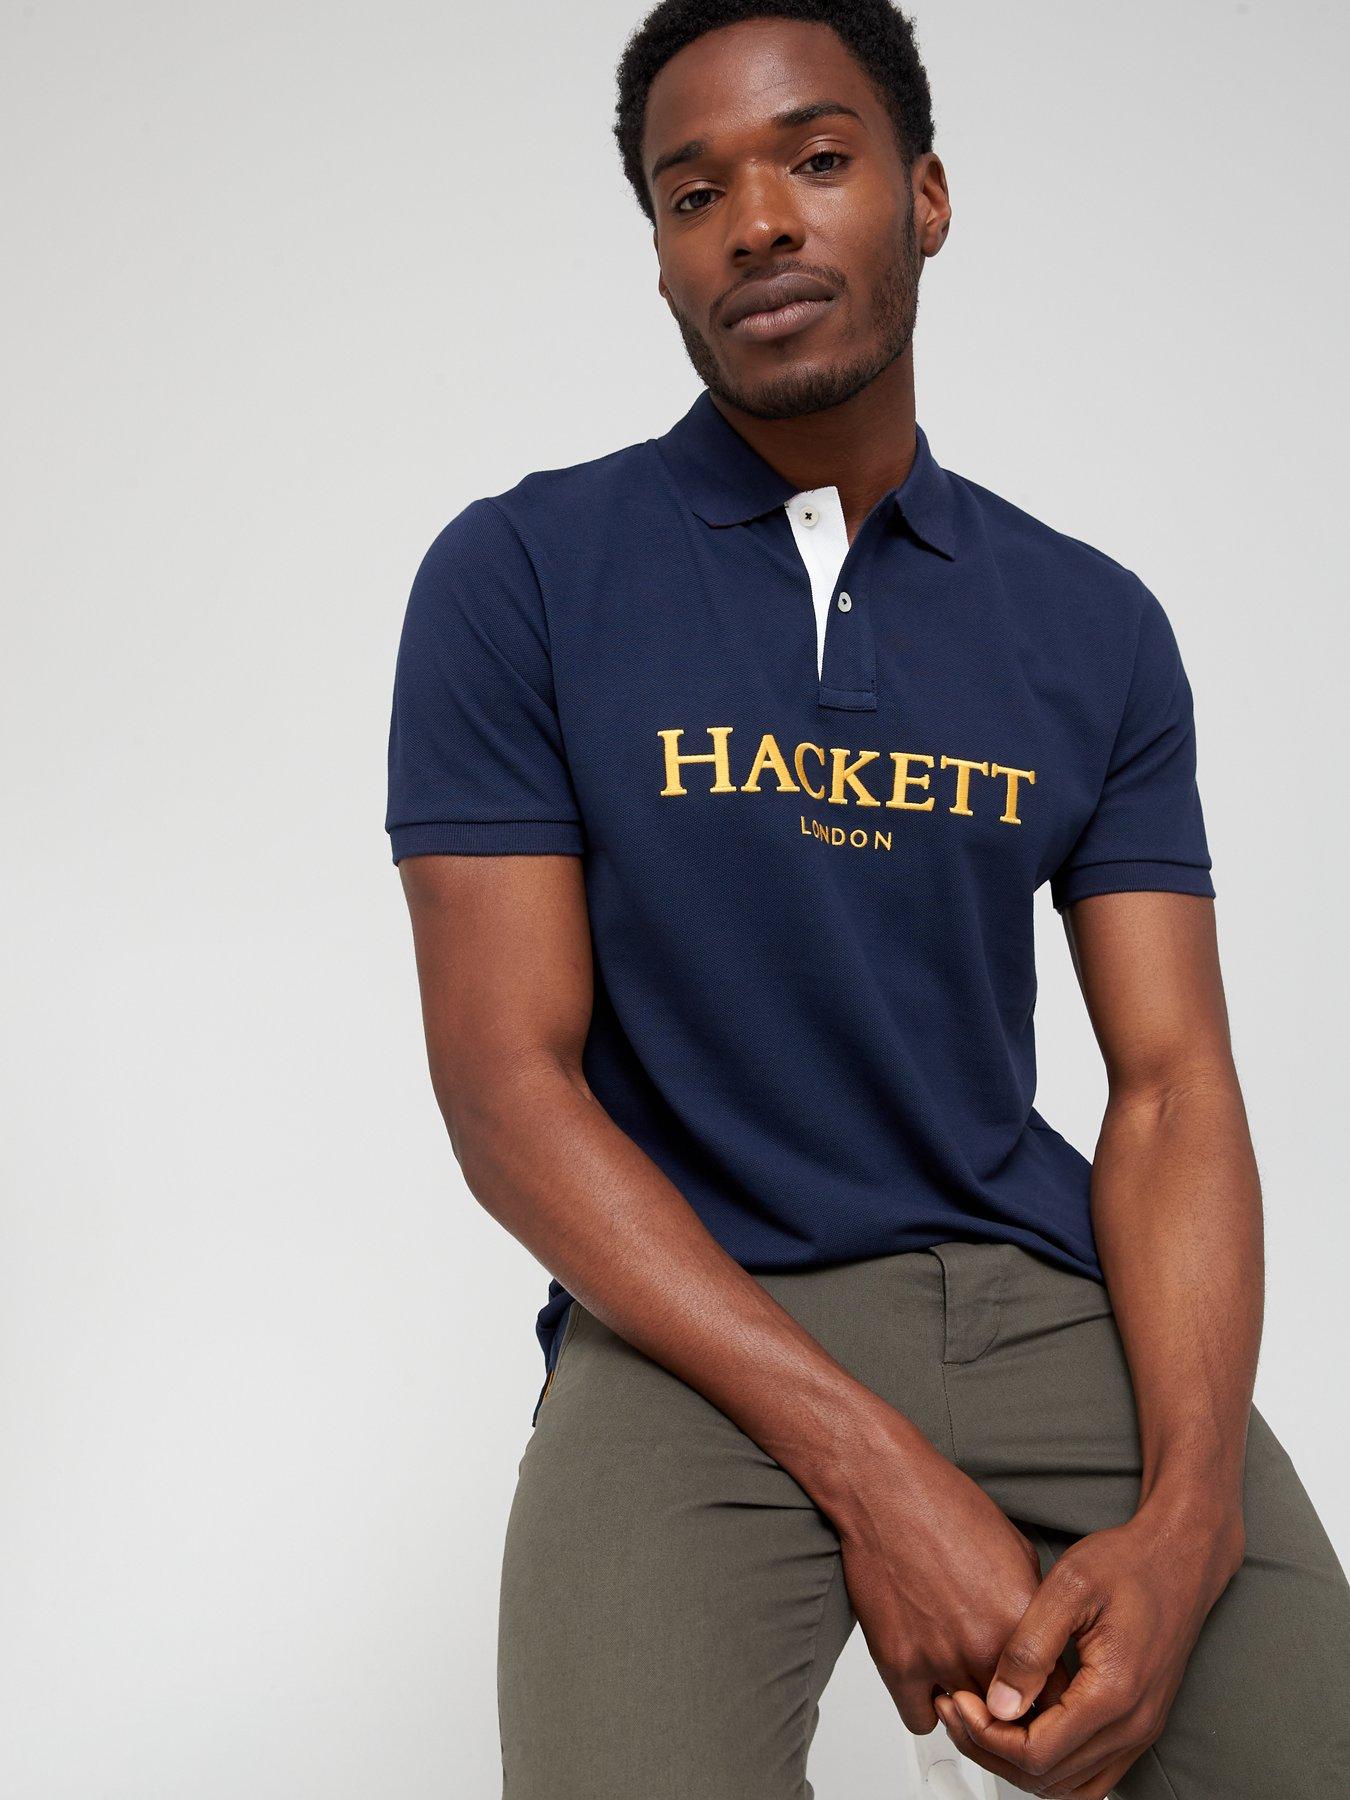 Hackett London Polo Shirt